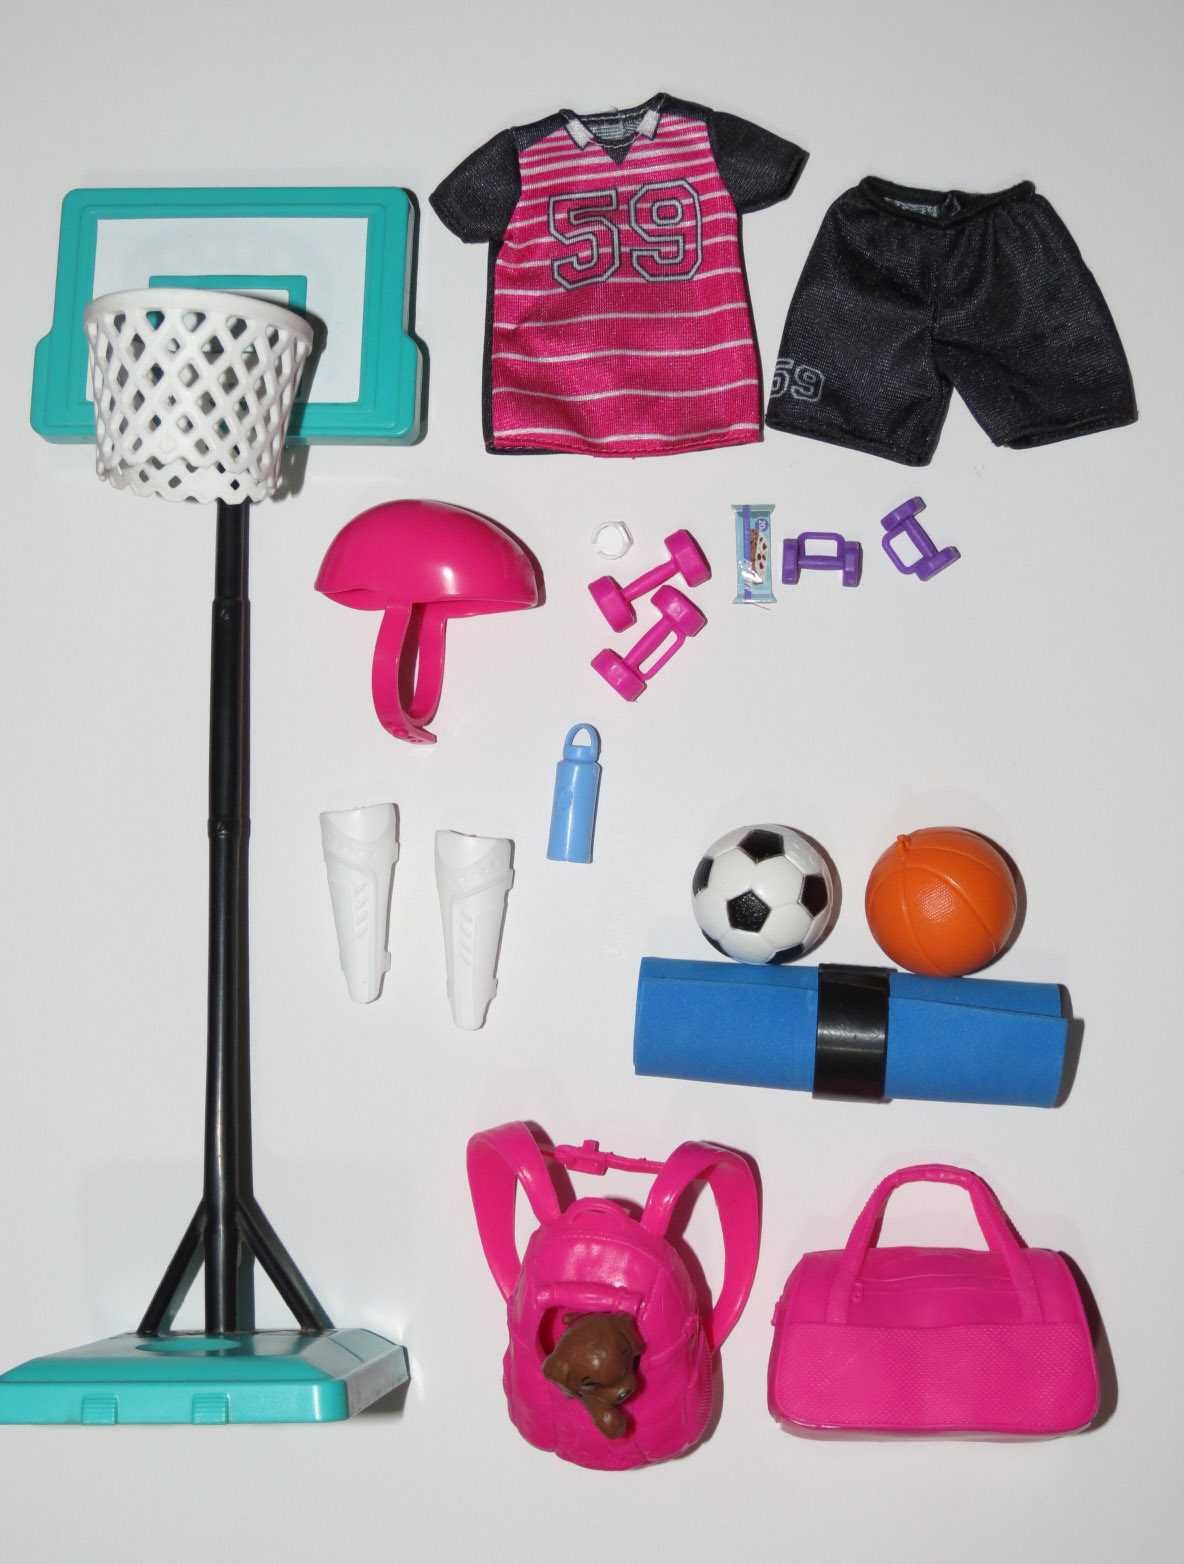 Набор игрушек "Спорт" для куклы Барби и других